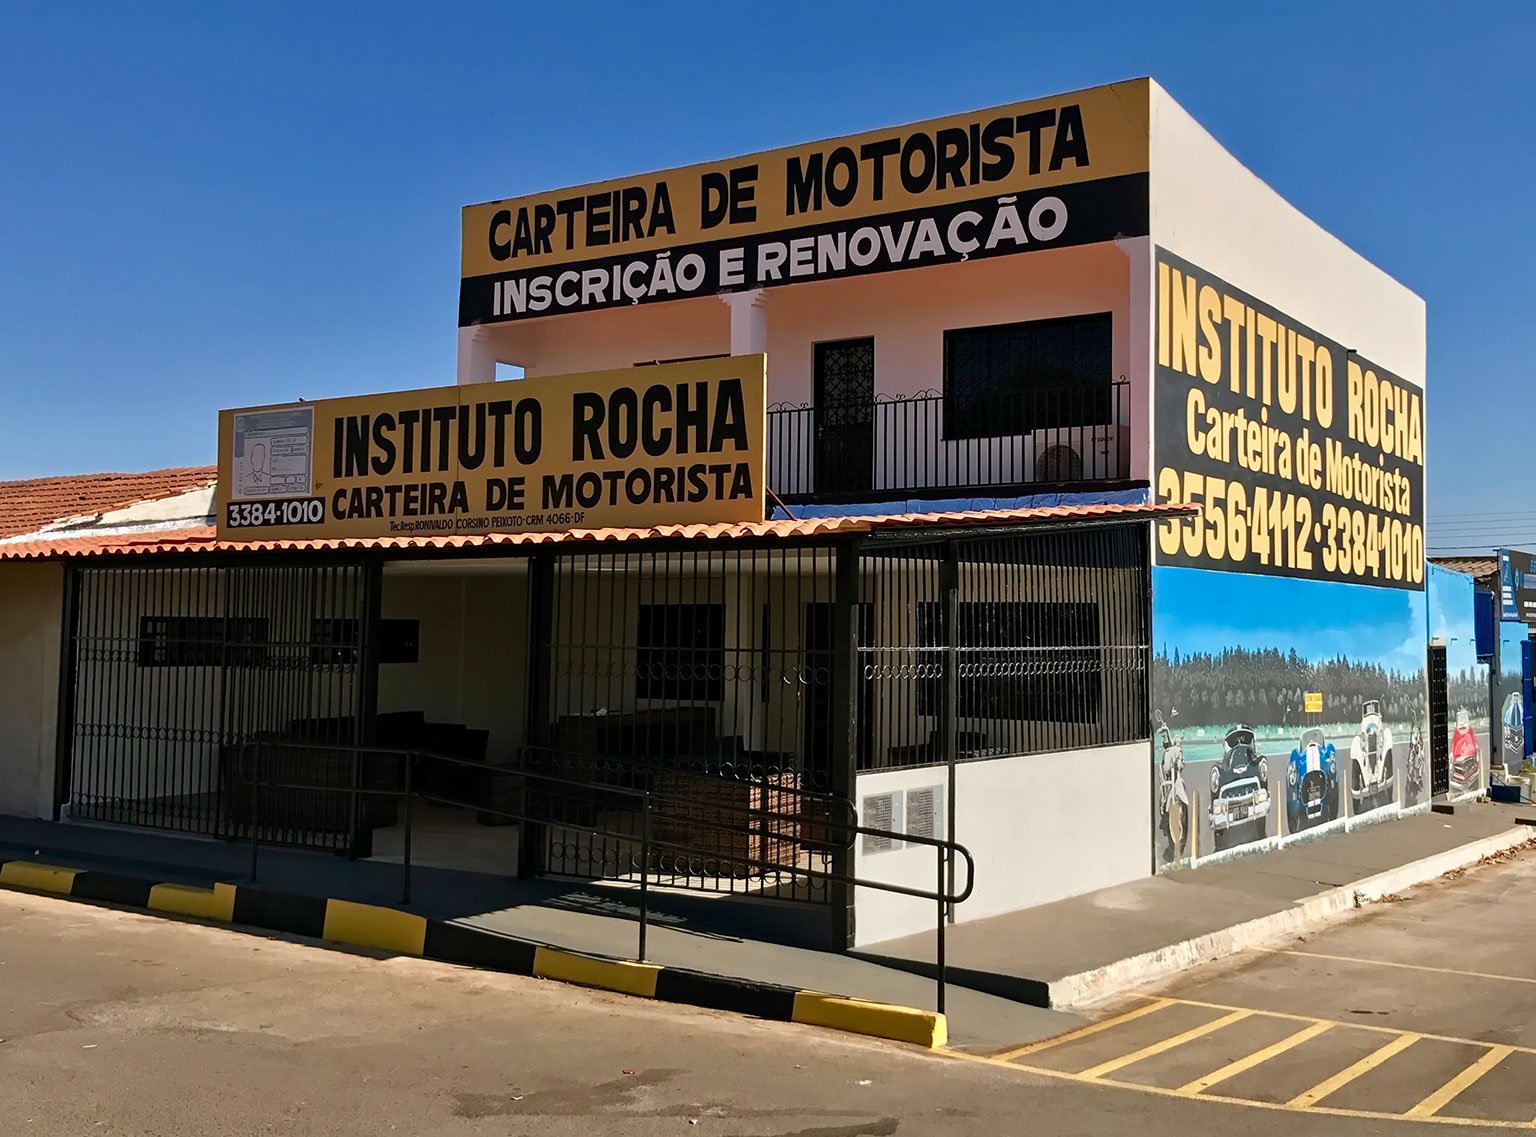 Imagem da entrada do Instituto Rocha